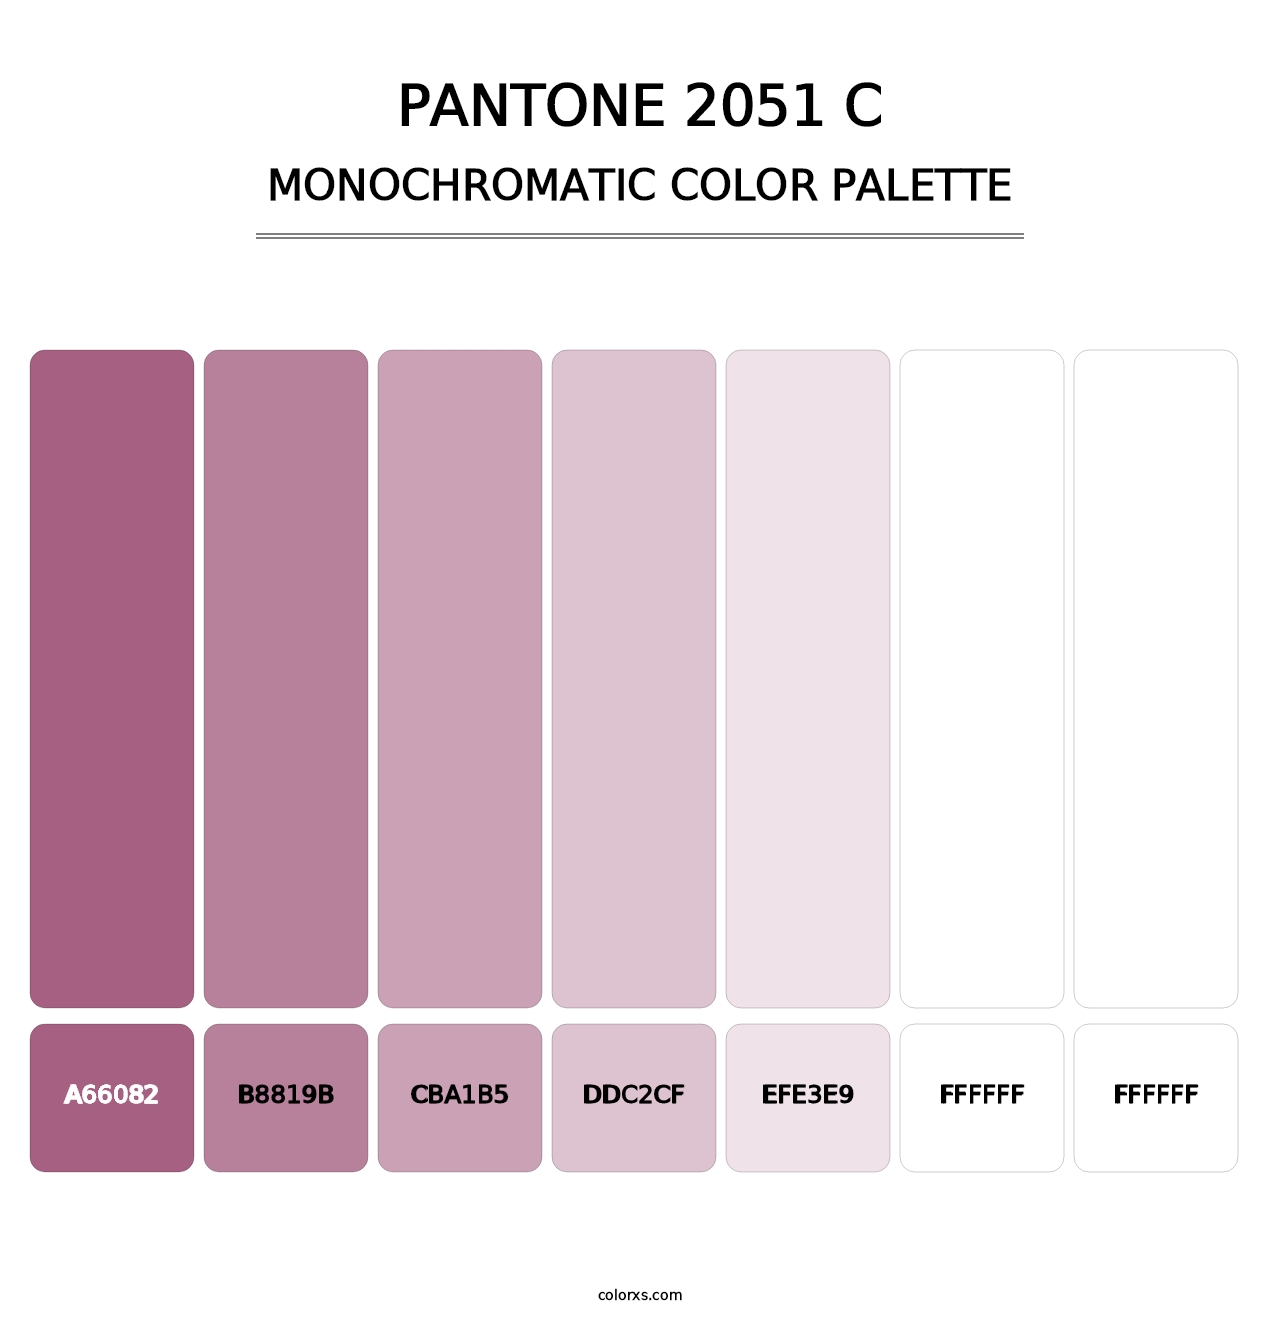 PANTONE 2051 C - Monochromatic Color Palette